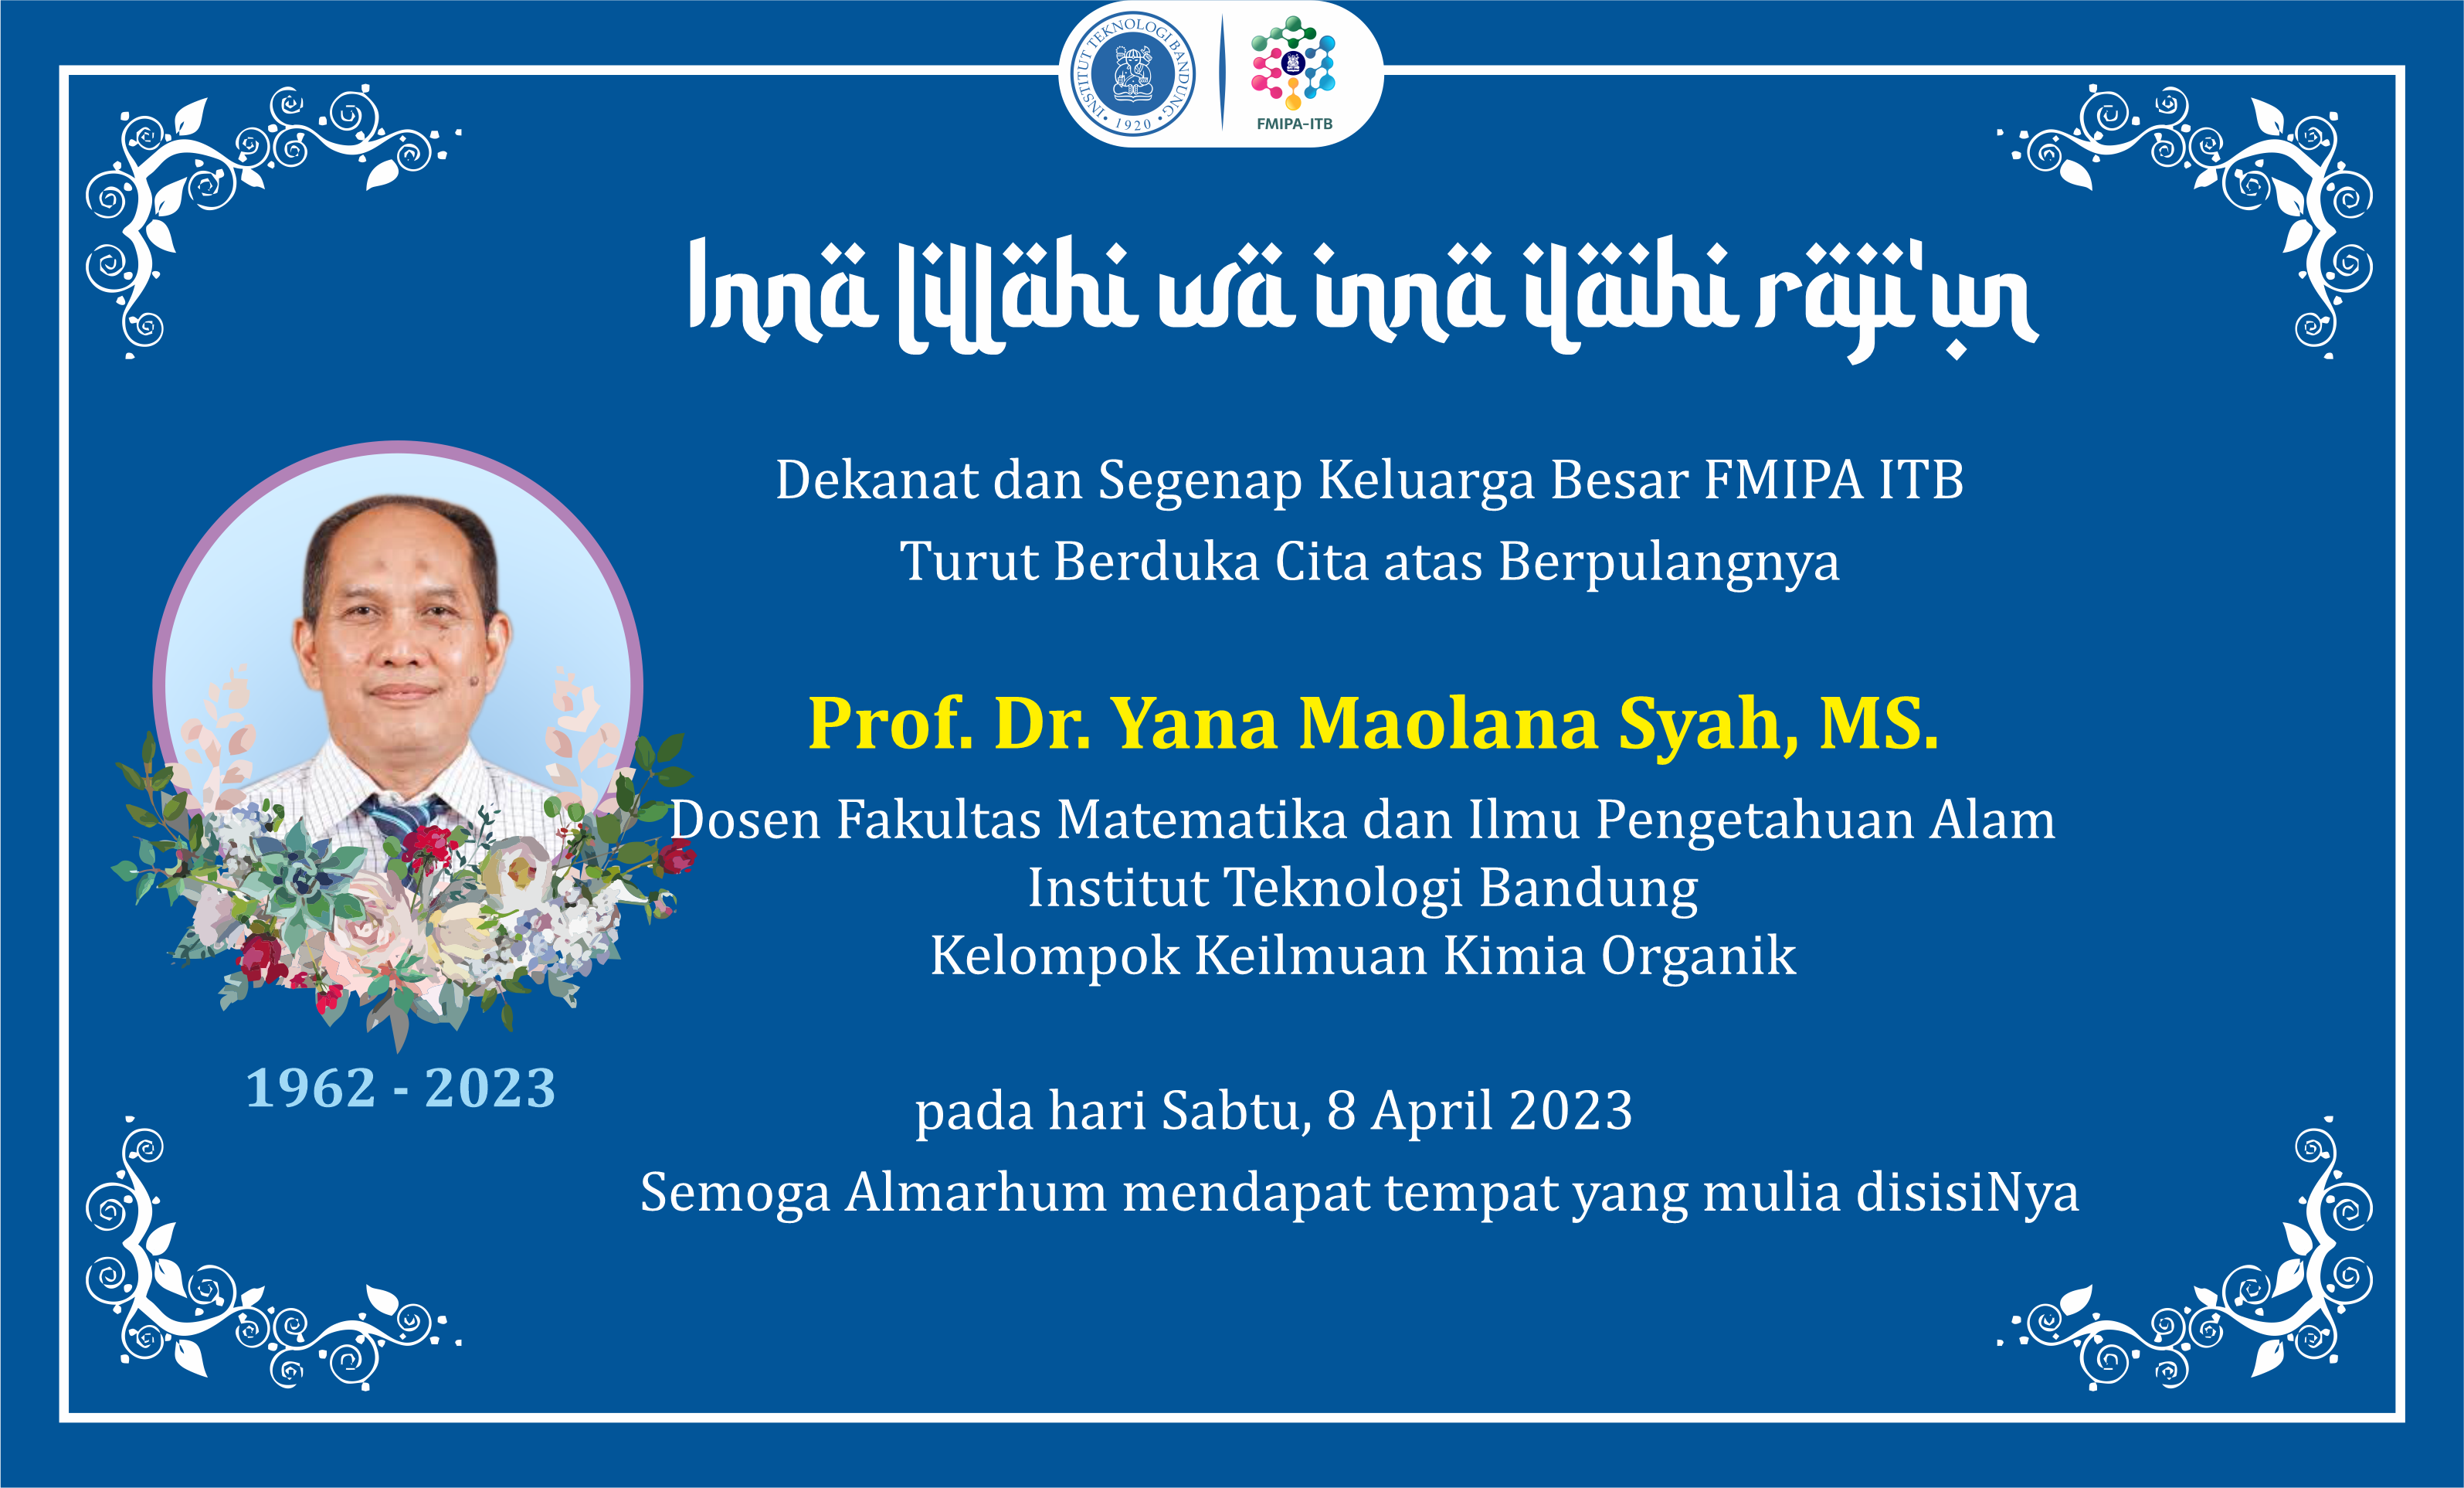 ORBITUARI: Prof. Dr. Yana Maolana Syah, MS. Guru Besar Kimia FMIPA ITB.